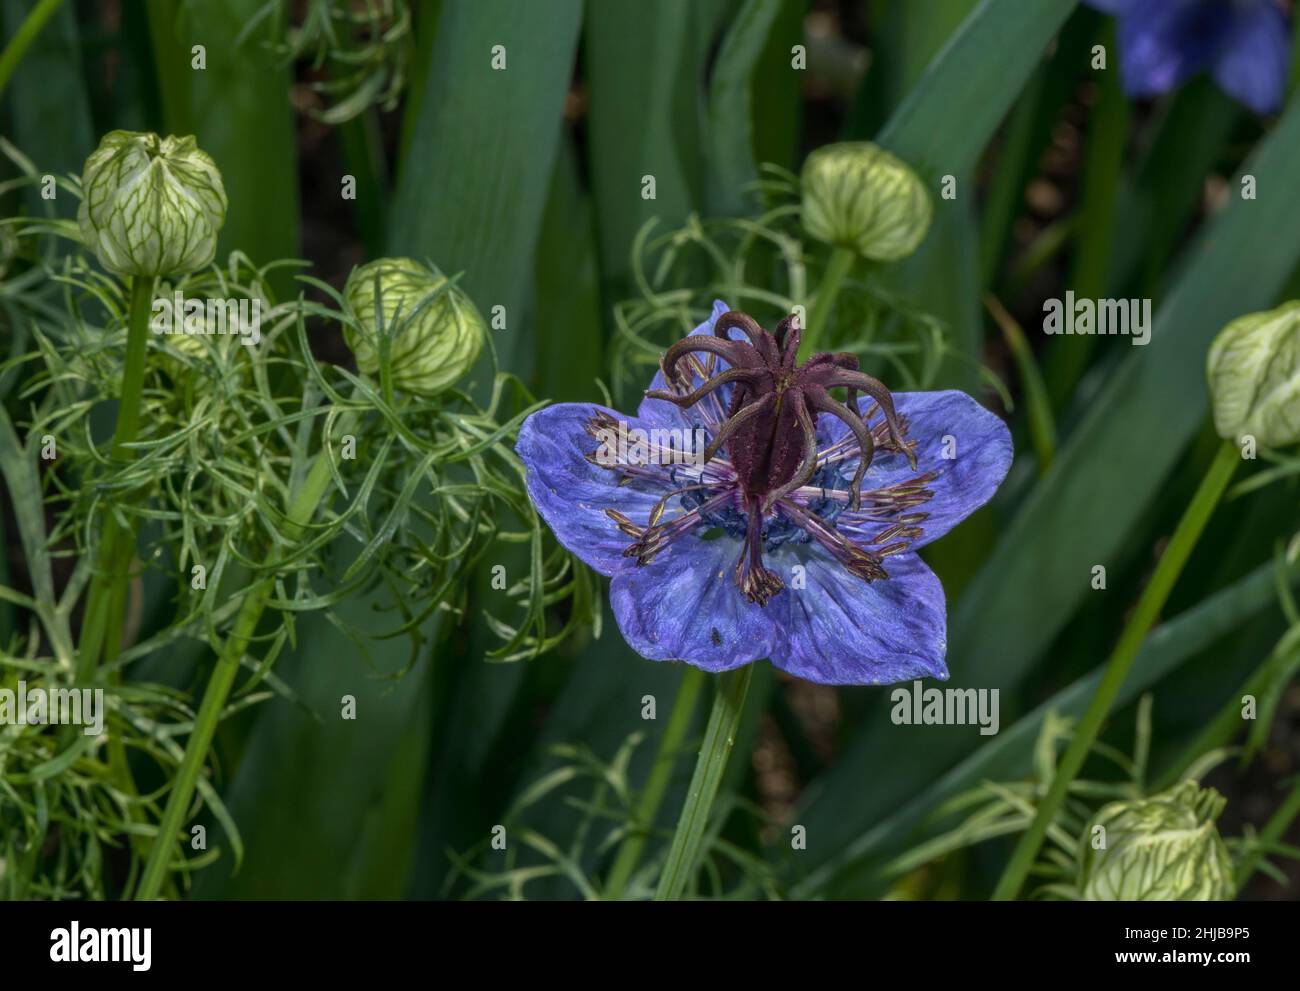 Spanish Fennel Flower, Nigella hispanica, in flower in herb garden. Stock Photo